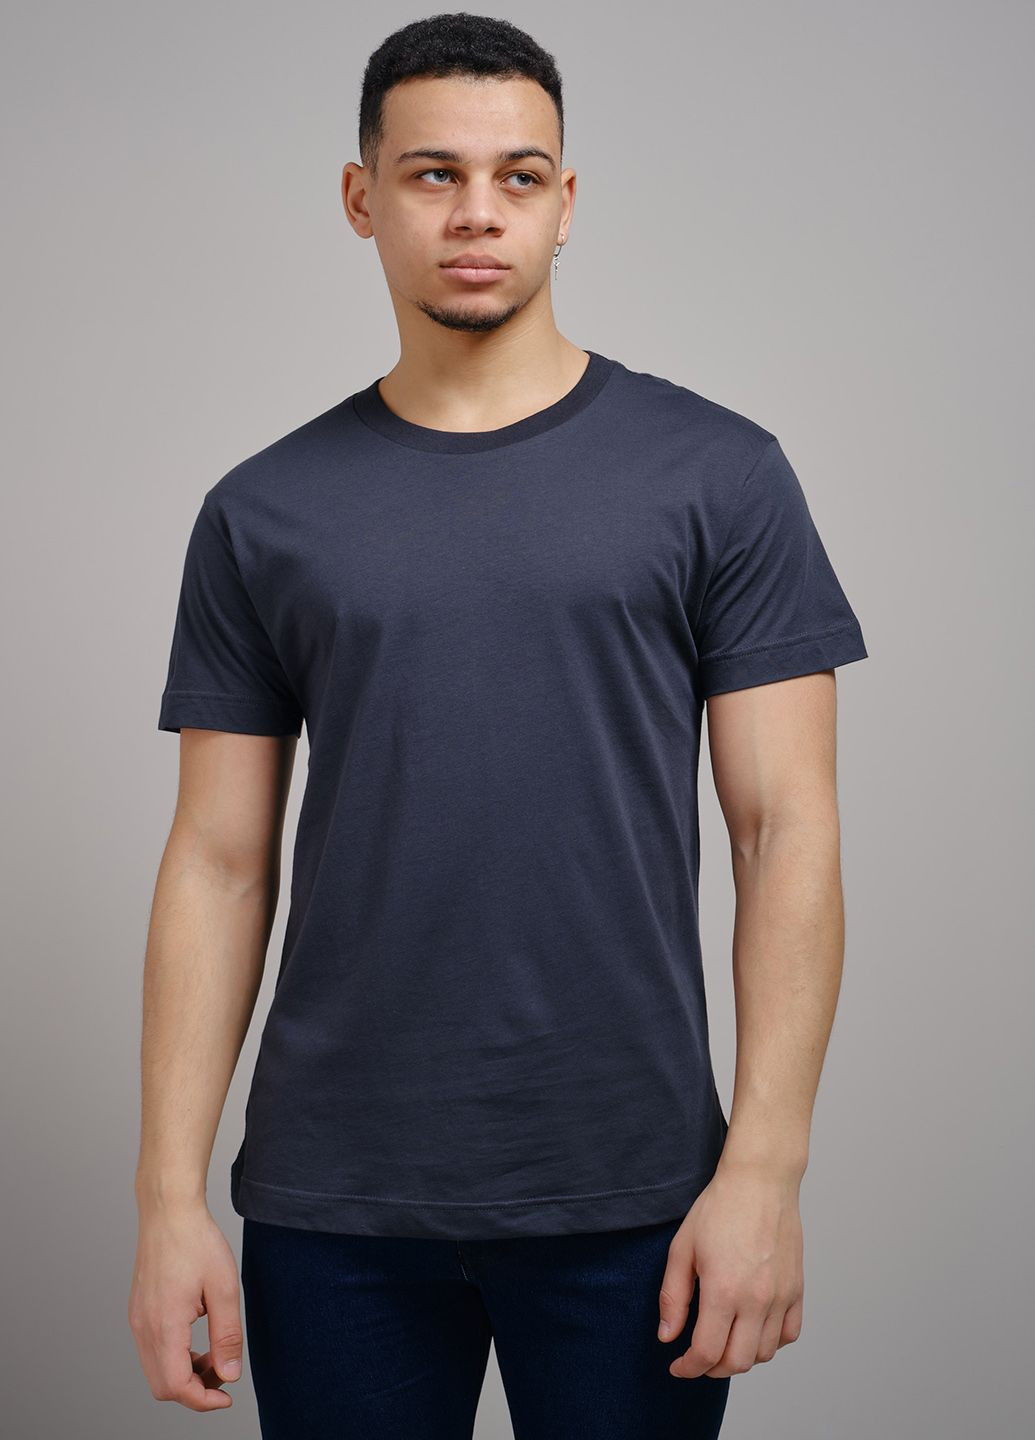 Синяя футболка мужская базовая серо-синяя 102934 Power